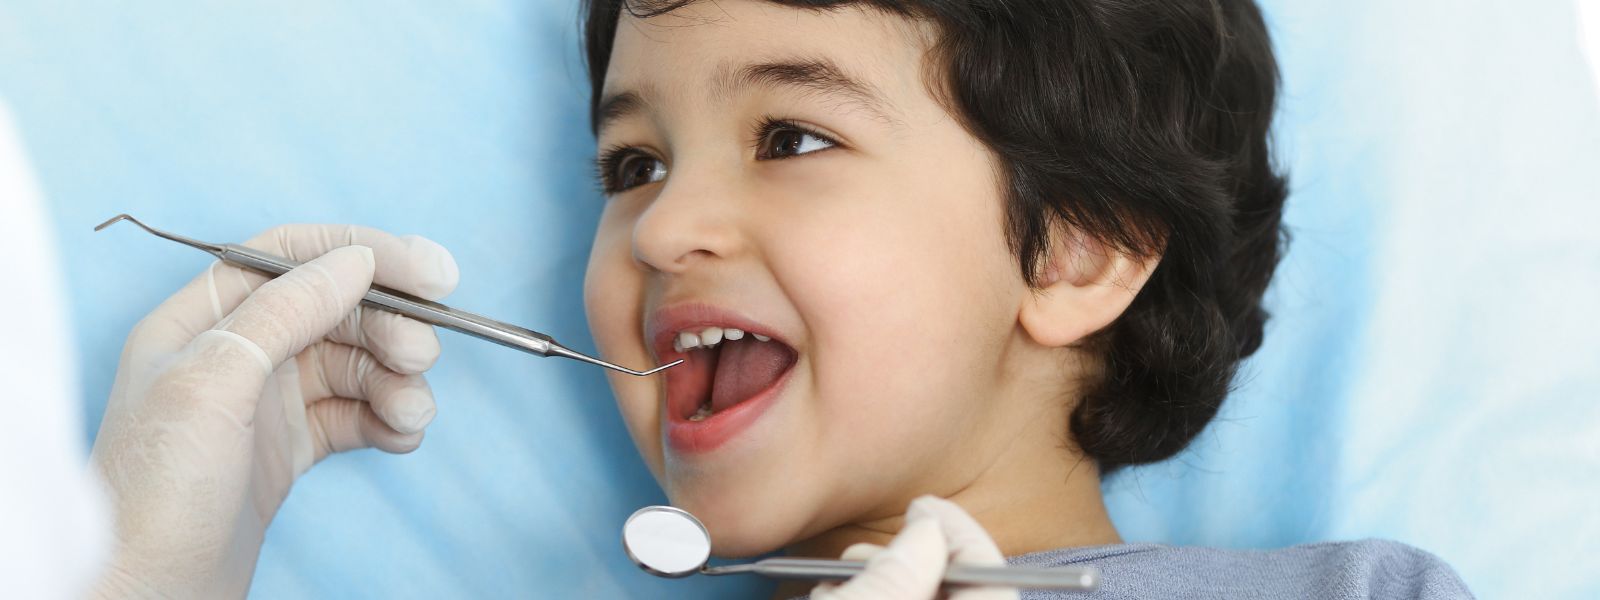 Small Boy happily at Dental while checking teeth